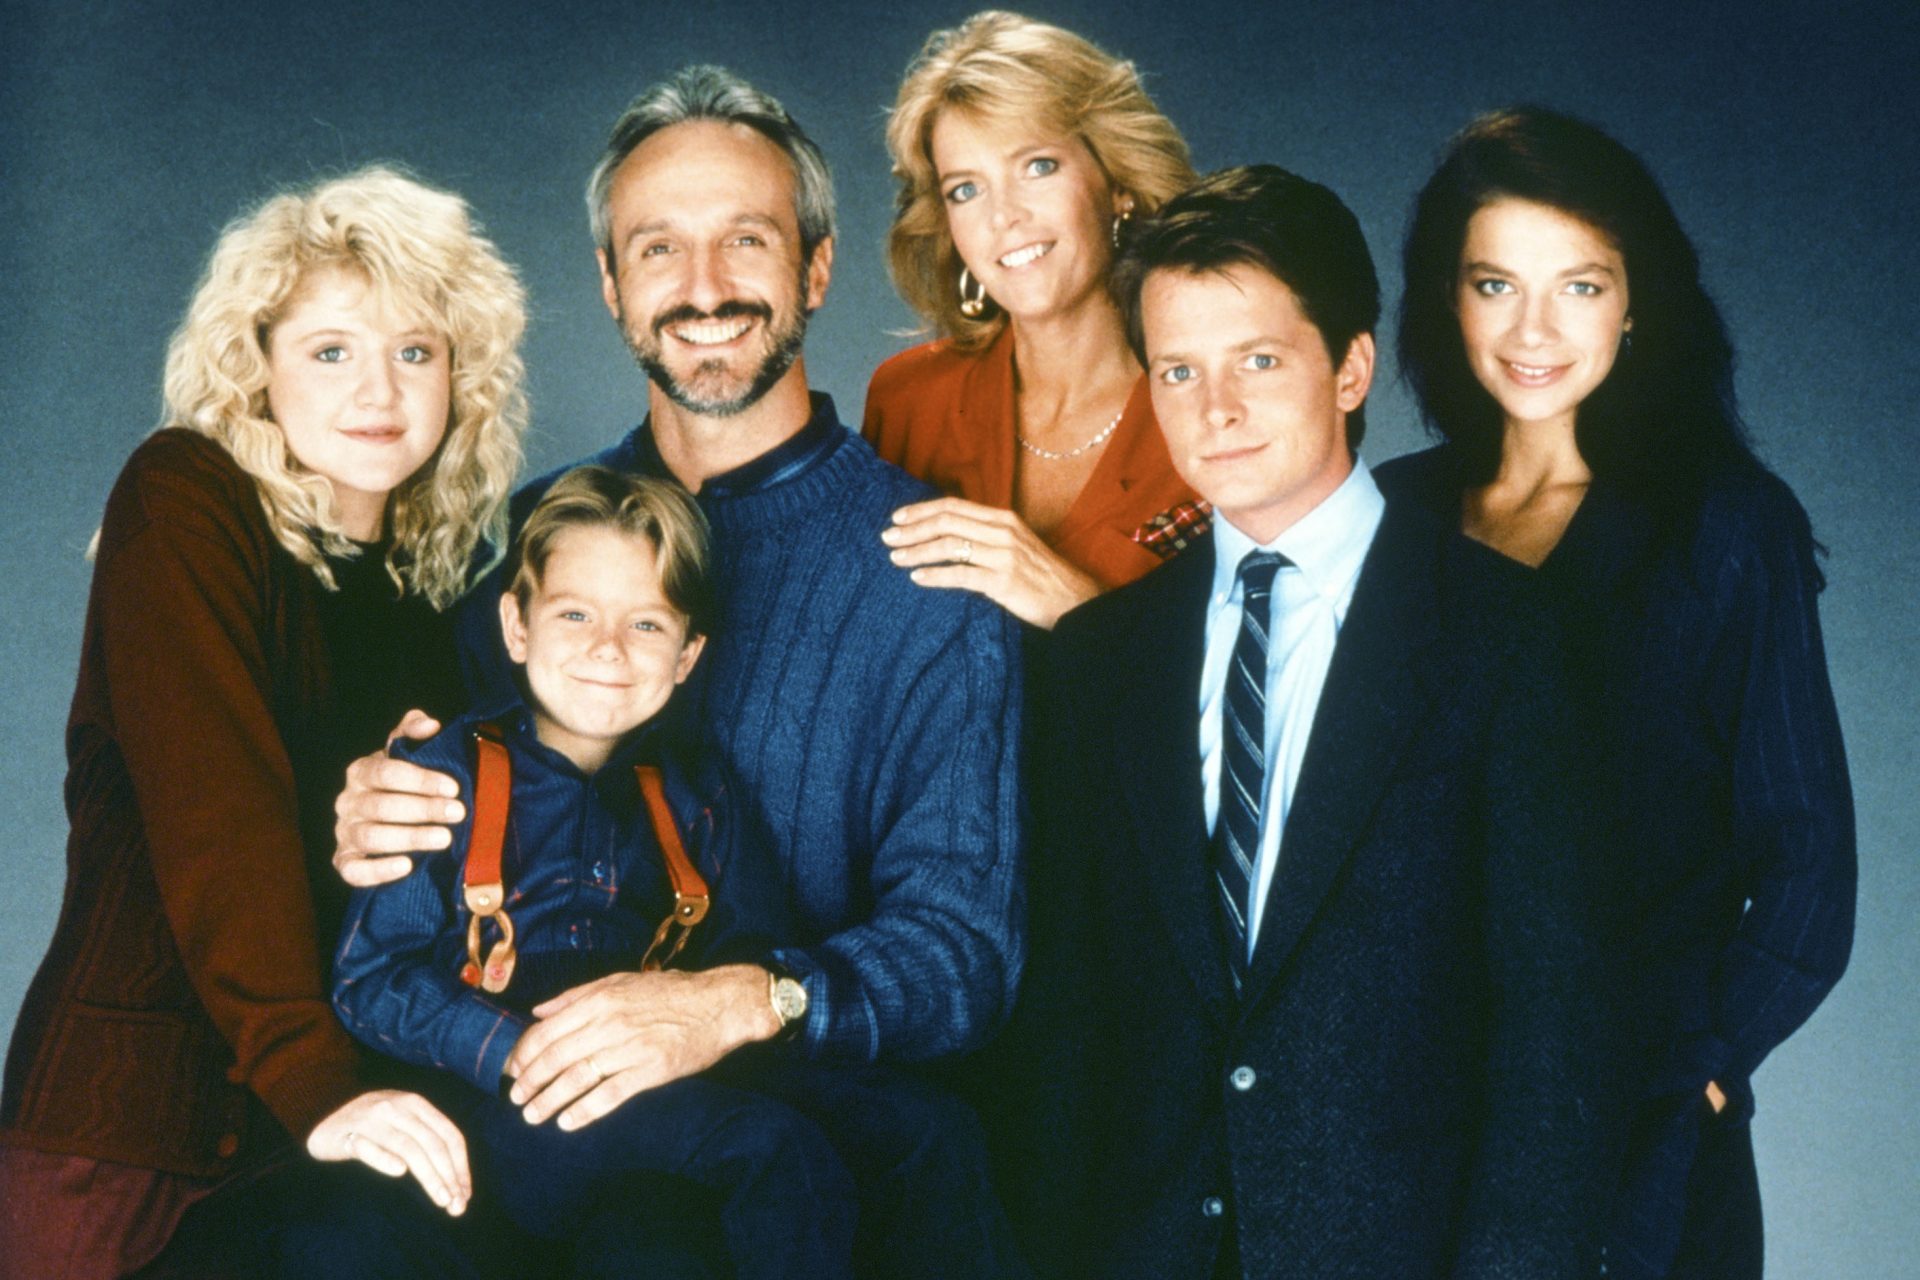 La popolare sitcom è andata in onda per 7 stagioni